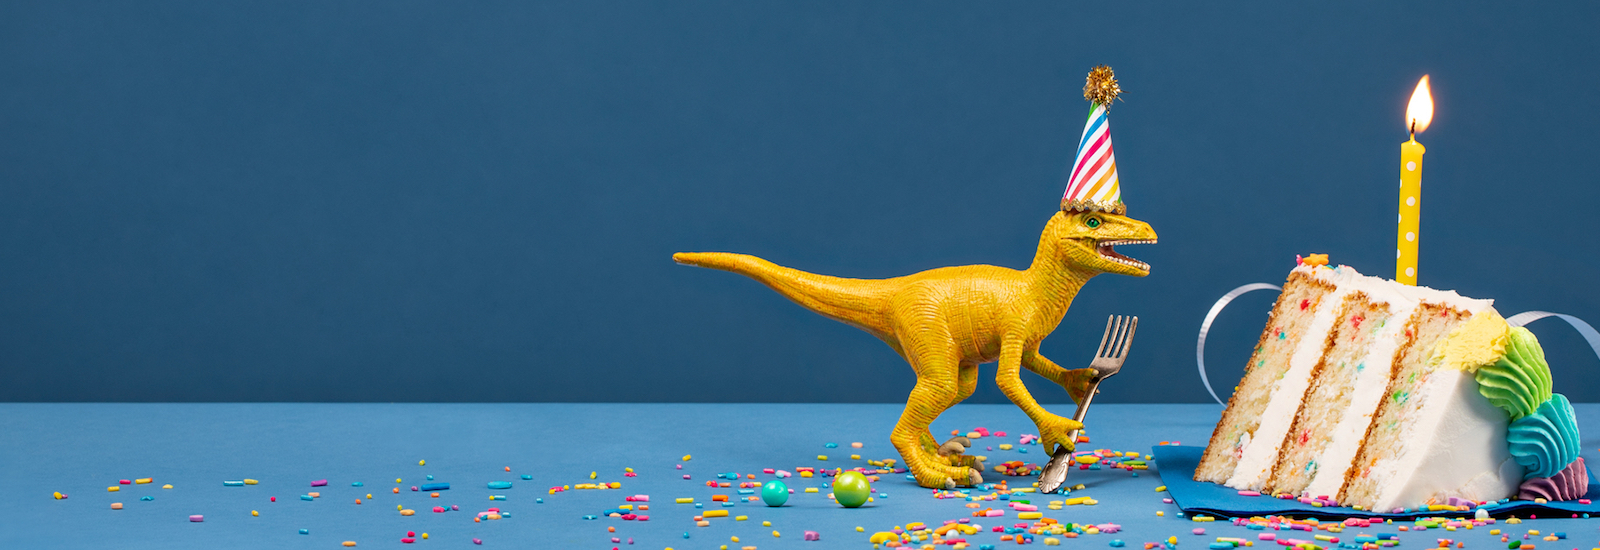 14 + динозавр день рождения Идеи для детей